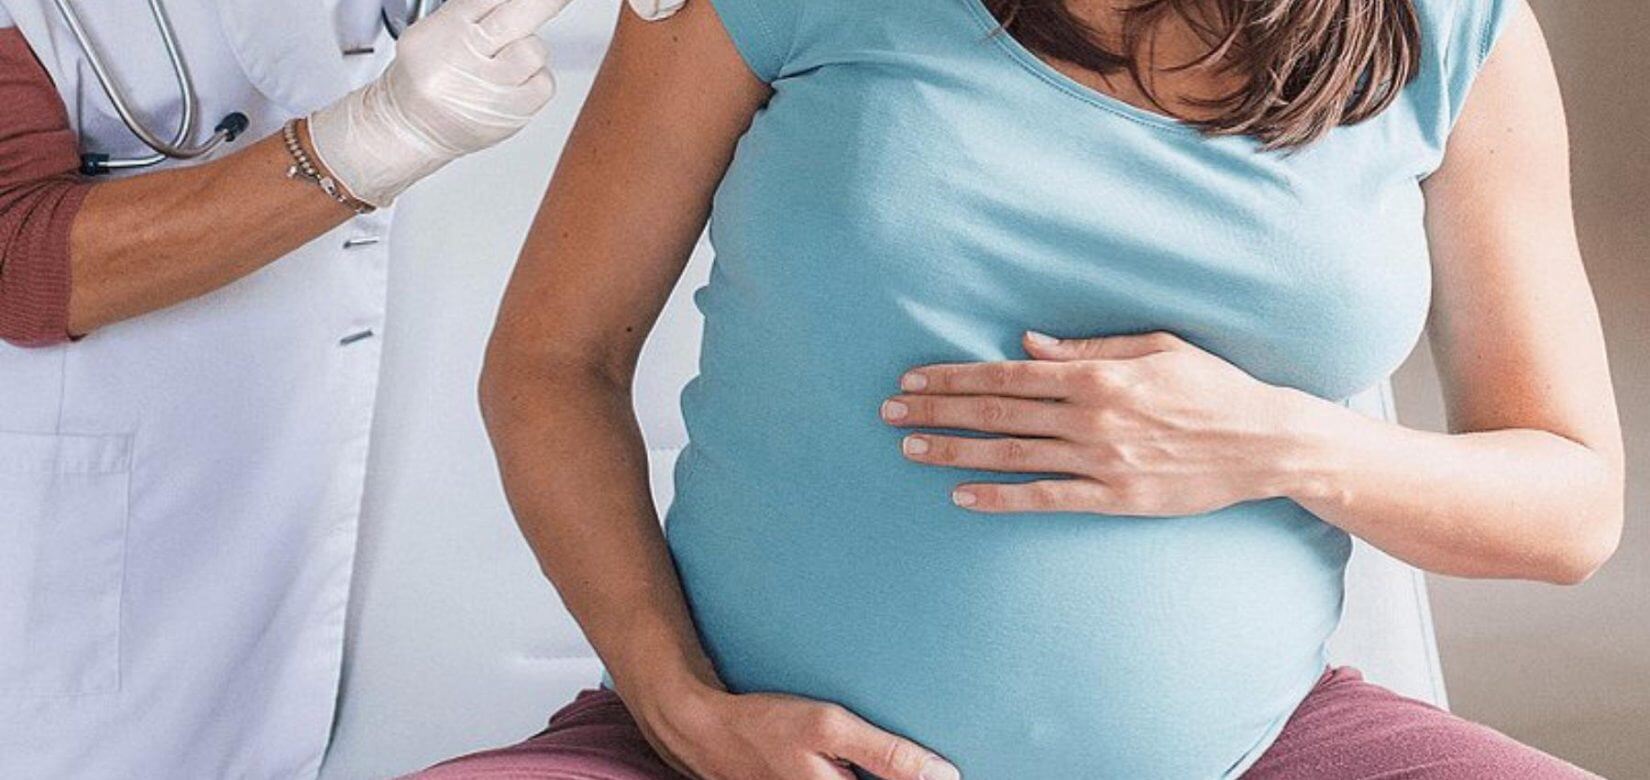 Κορονοϊός: Τί δείχνουν τα στοιχεία για τον εμβολιασμό στη διάρκεια της εγκυμοσύνης;